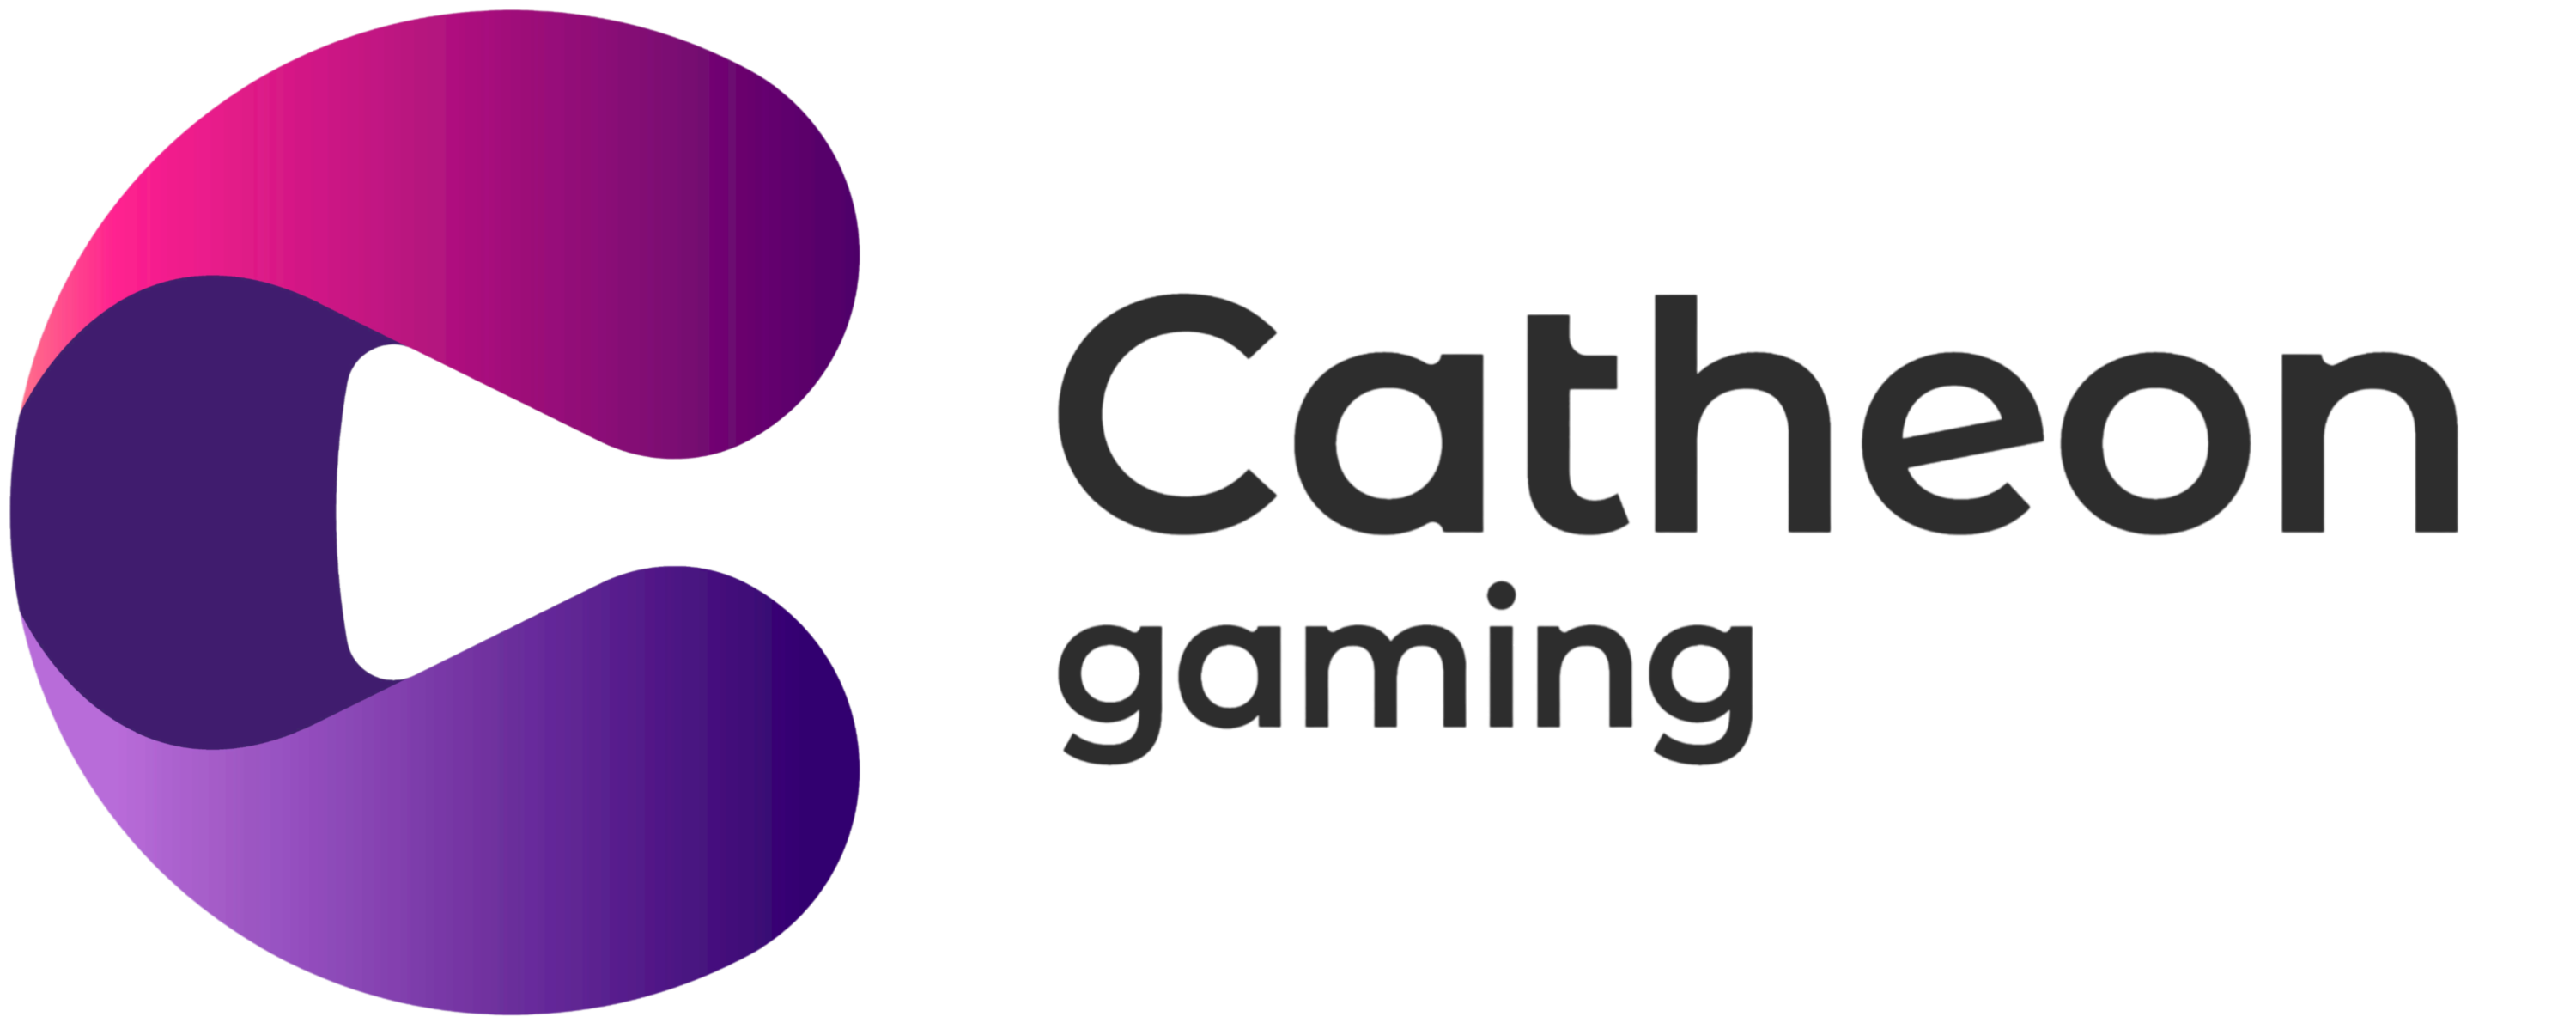 Catheon Gaming Logo.png